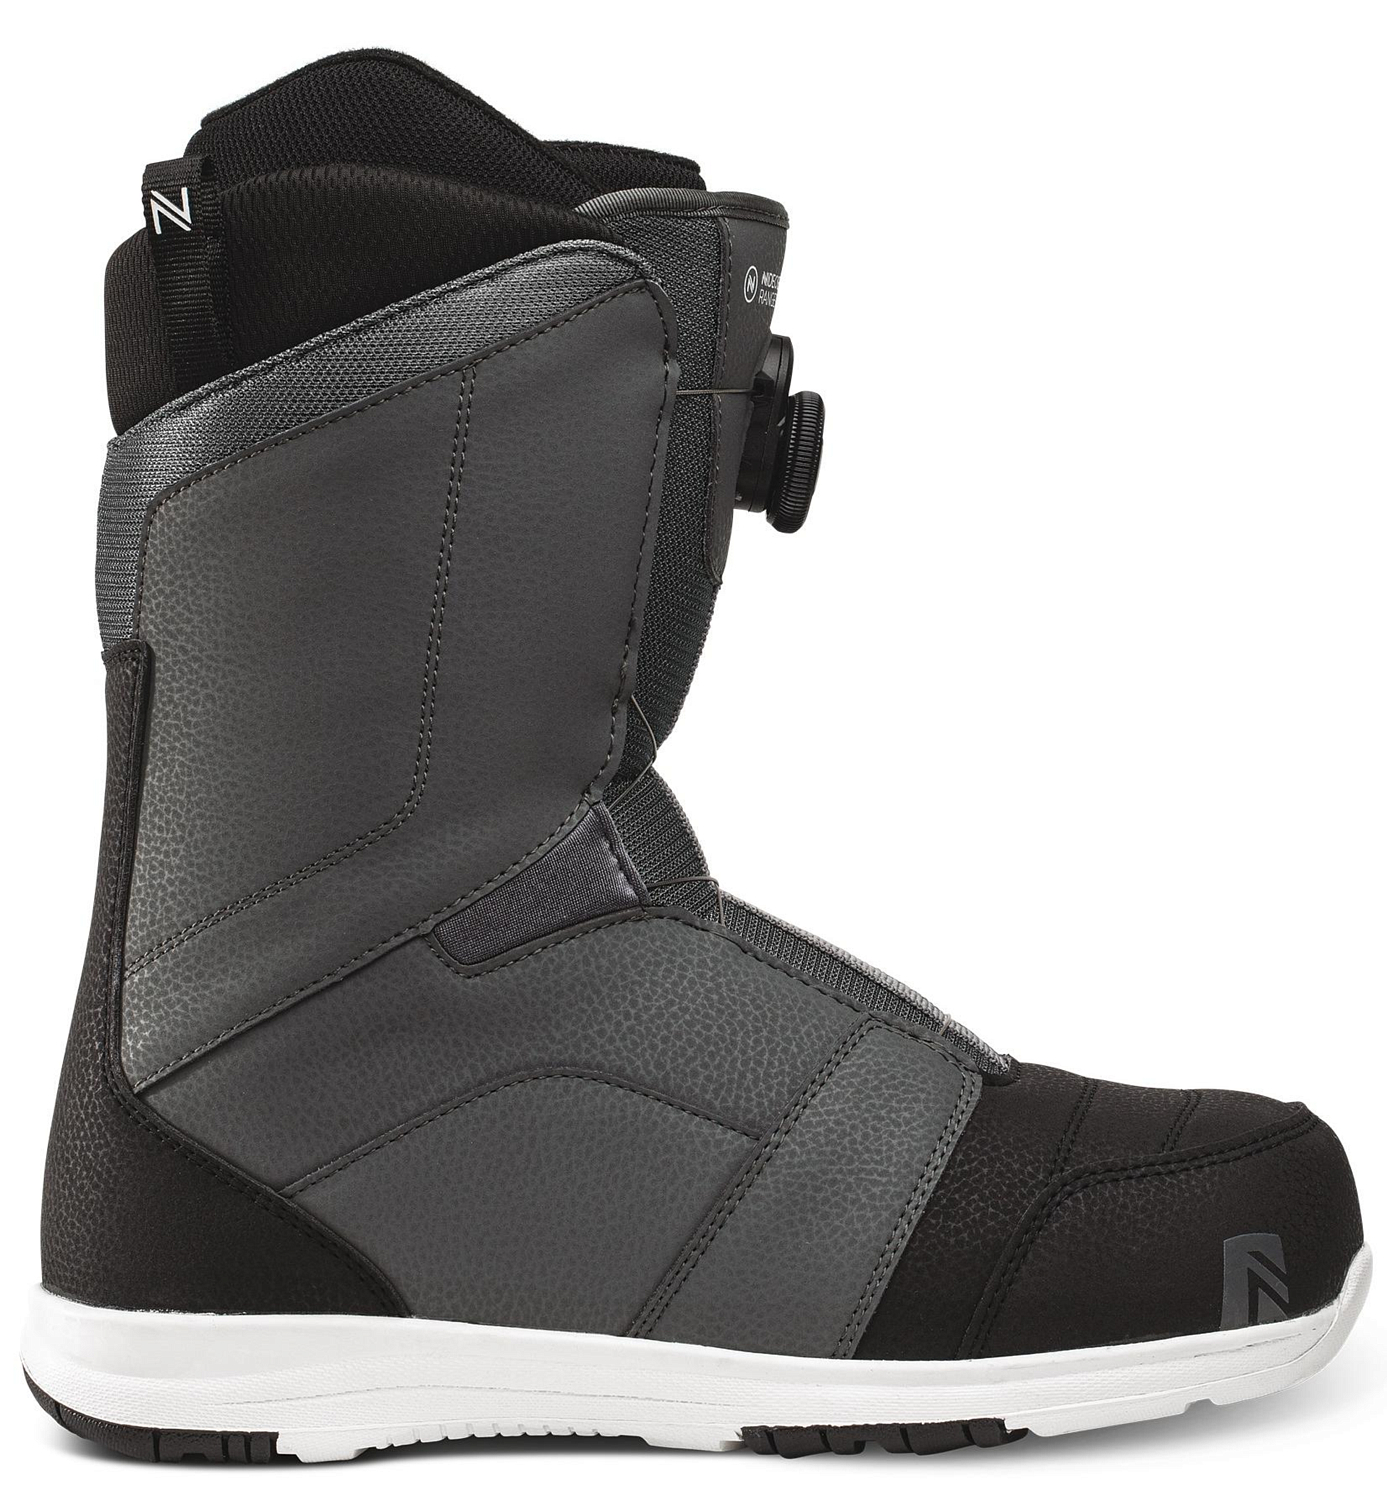 Ботинки для сноуборда NIDECKER 2020-21 Ranger Grey